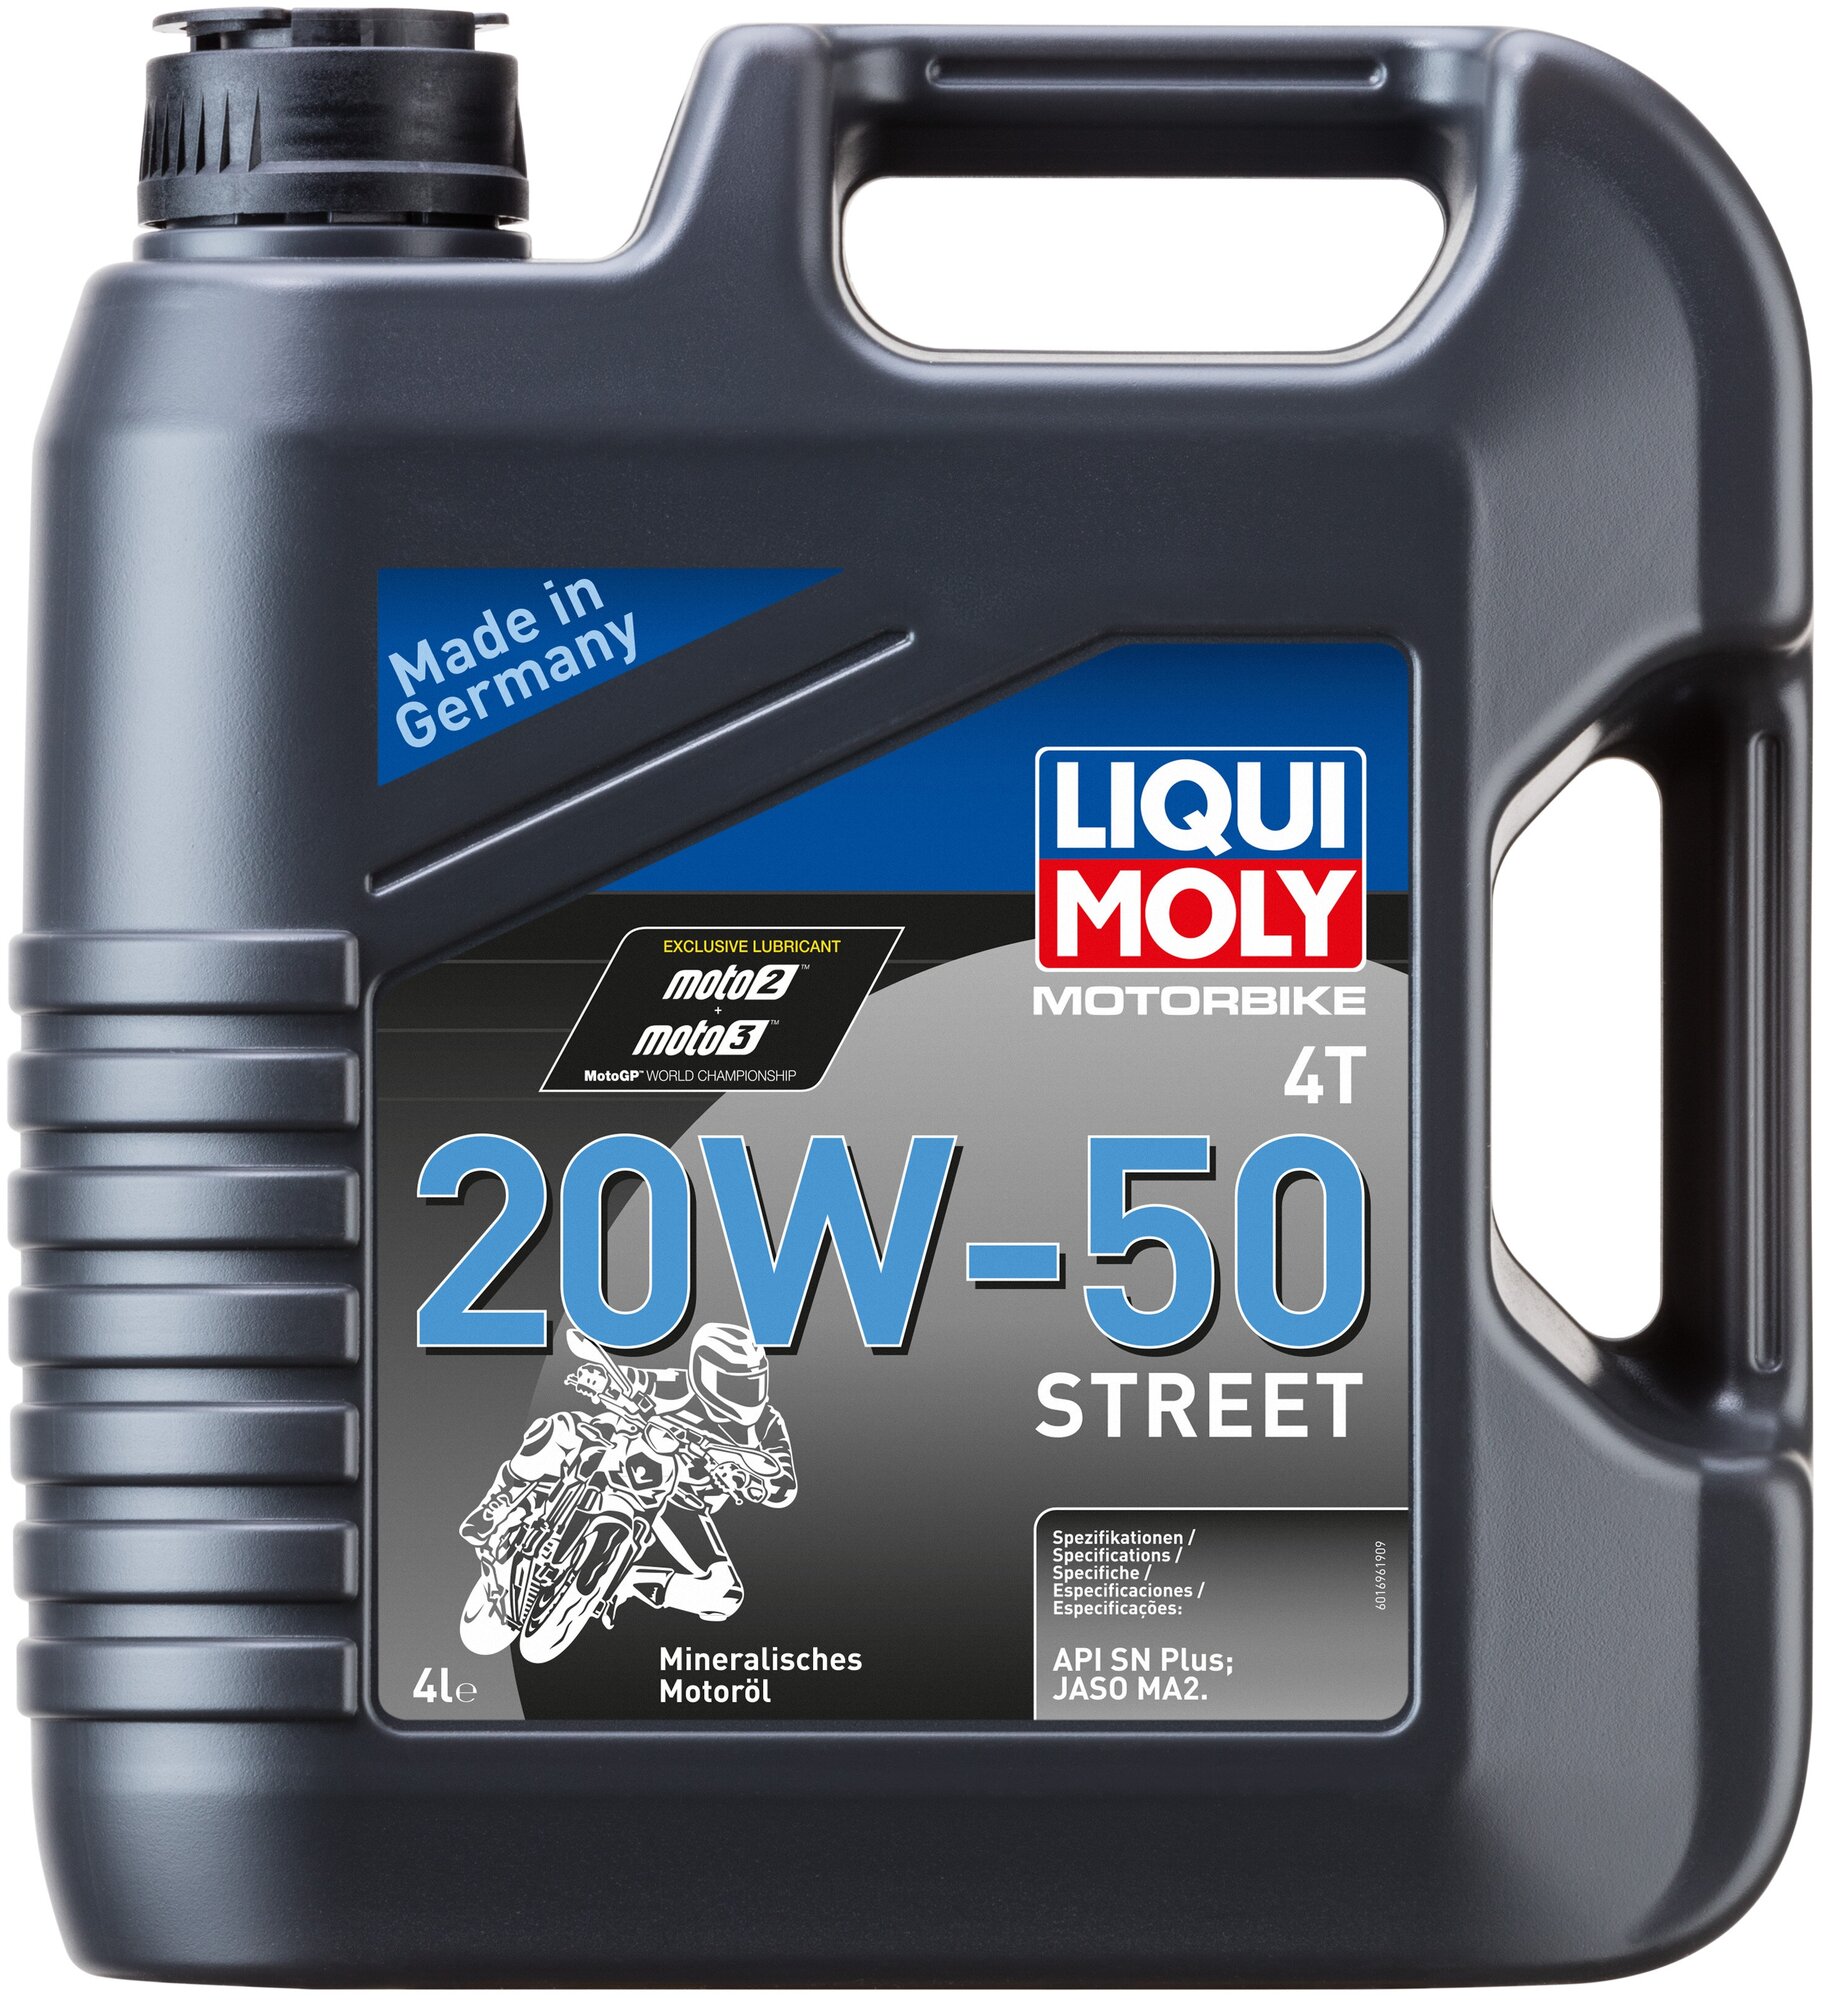 Синтетическое моторное масло LIQUI MOLY Motorbike 4T 20W-50 Street